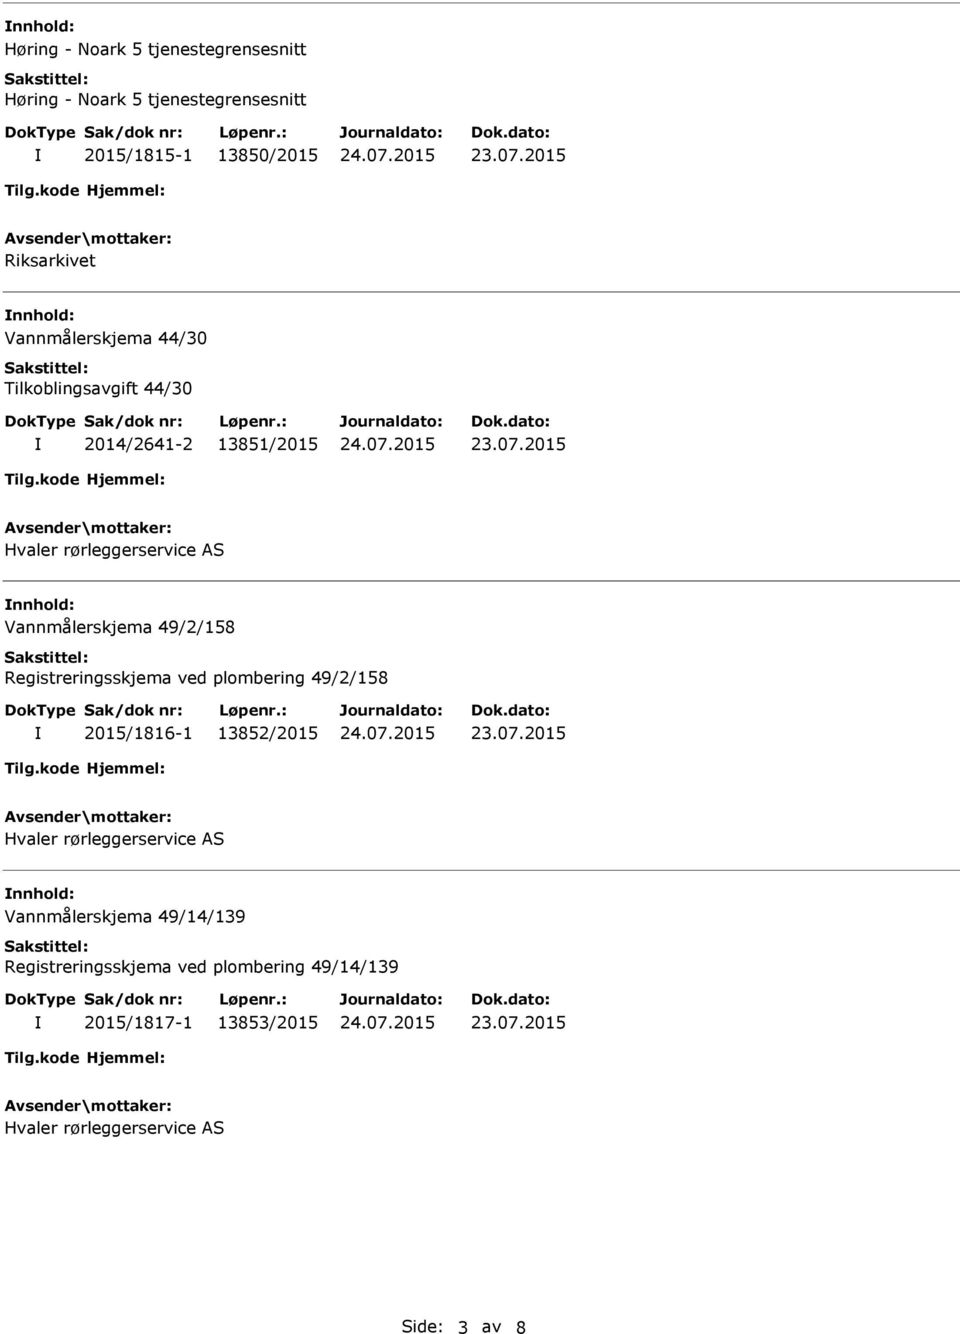 nnhold: Vannmålerskjema 49/2/158 Registreringsskjema ved plombering 49/2/158 2015/1816-1 13852/2015